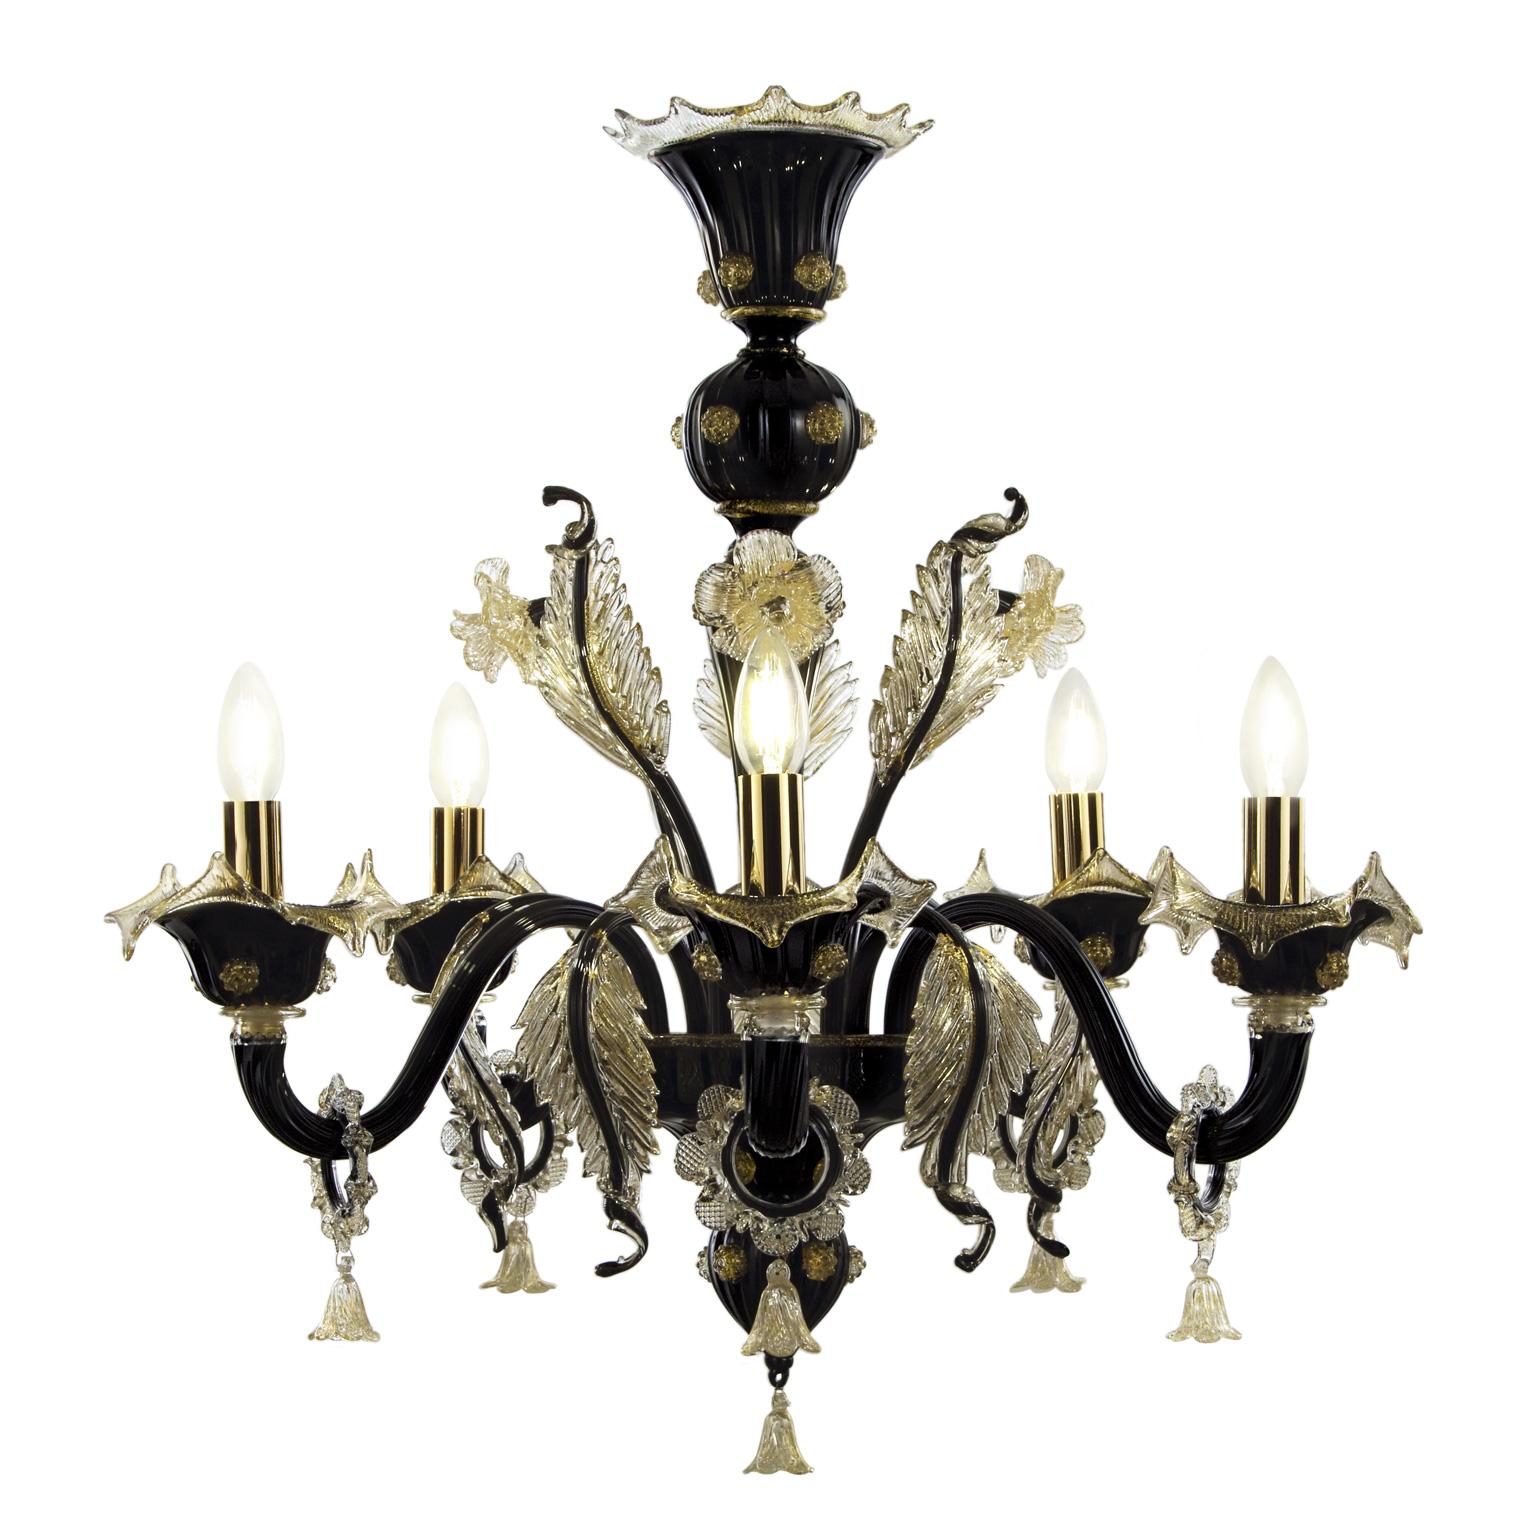 Der 5-flammige Kronleuchter Bovary aus schwarzem Kunstglas mit goldenen Details von Multiforme ist ein luxuriöser Kronleuchter, der nie veraltet sein wird.
Diese Kollektion ist inspiriert von den klassischen venezianischen Kronleuchtern mit